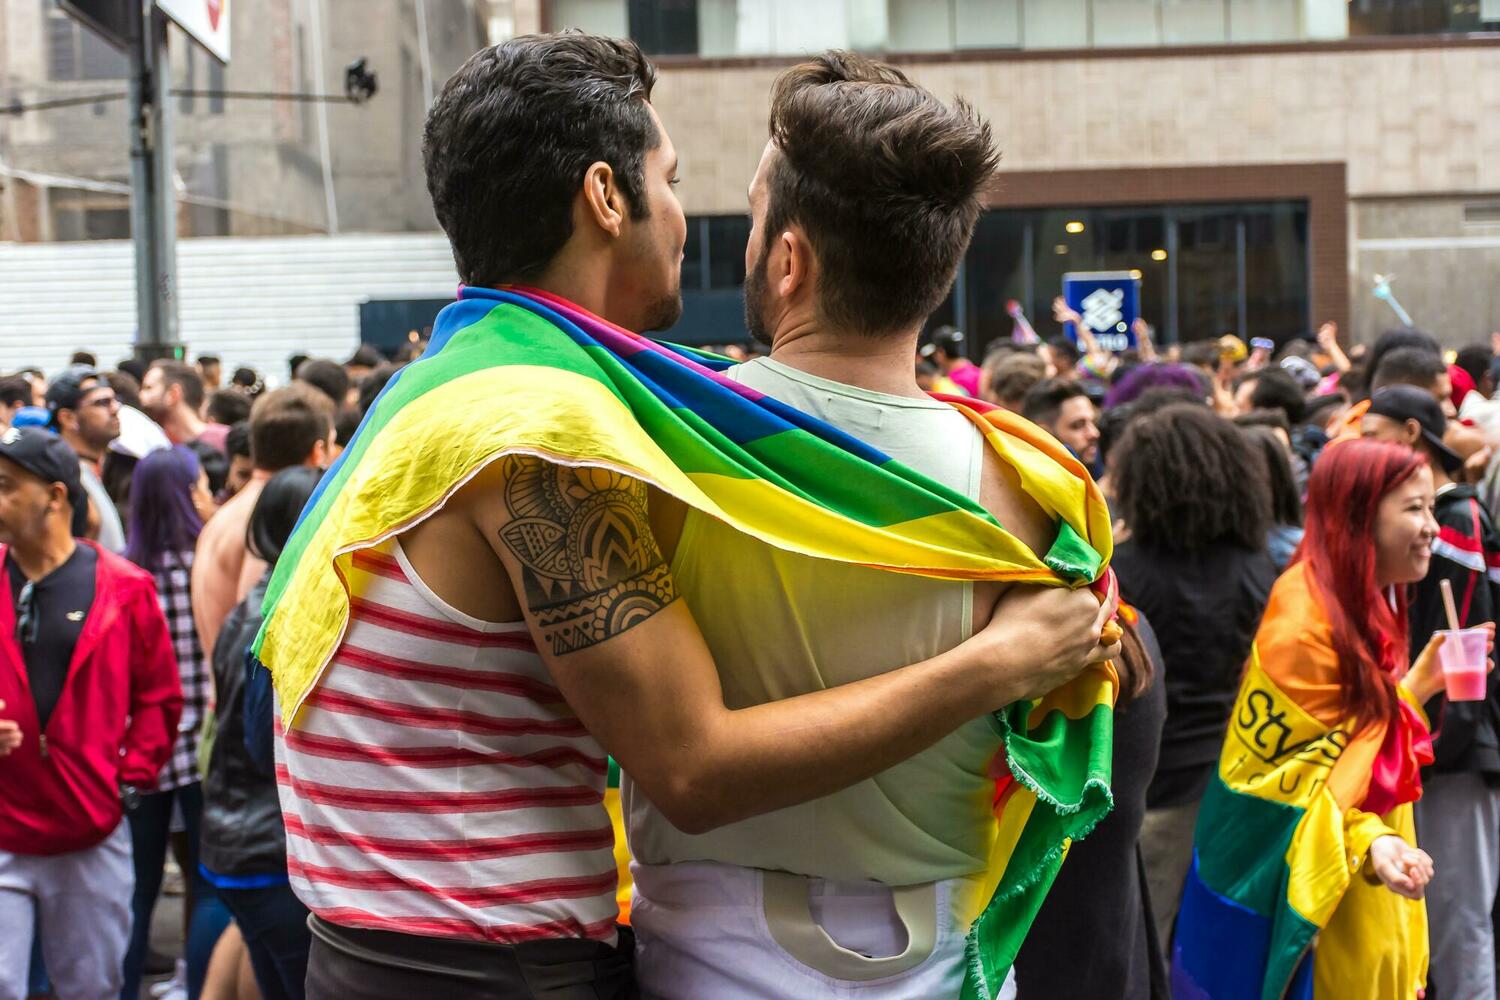  Главы ешивы Мицпе-Рамона: «геи — это злодеи, боритесь с ними» 